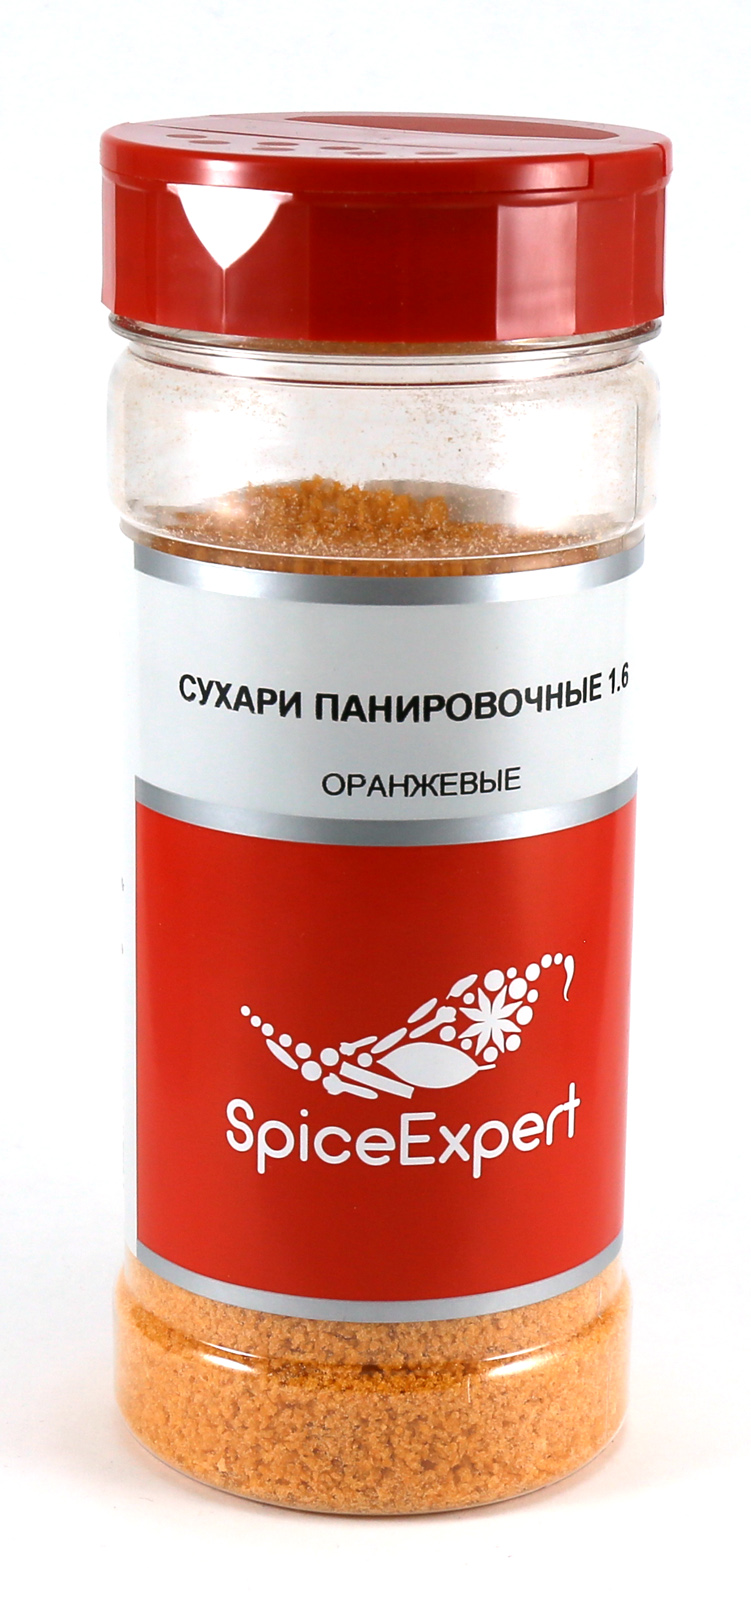 Сухари панировочные SpiceExpert оранжевые средняя крошка 180 г